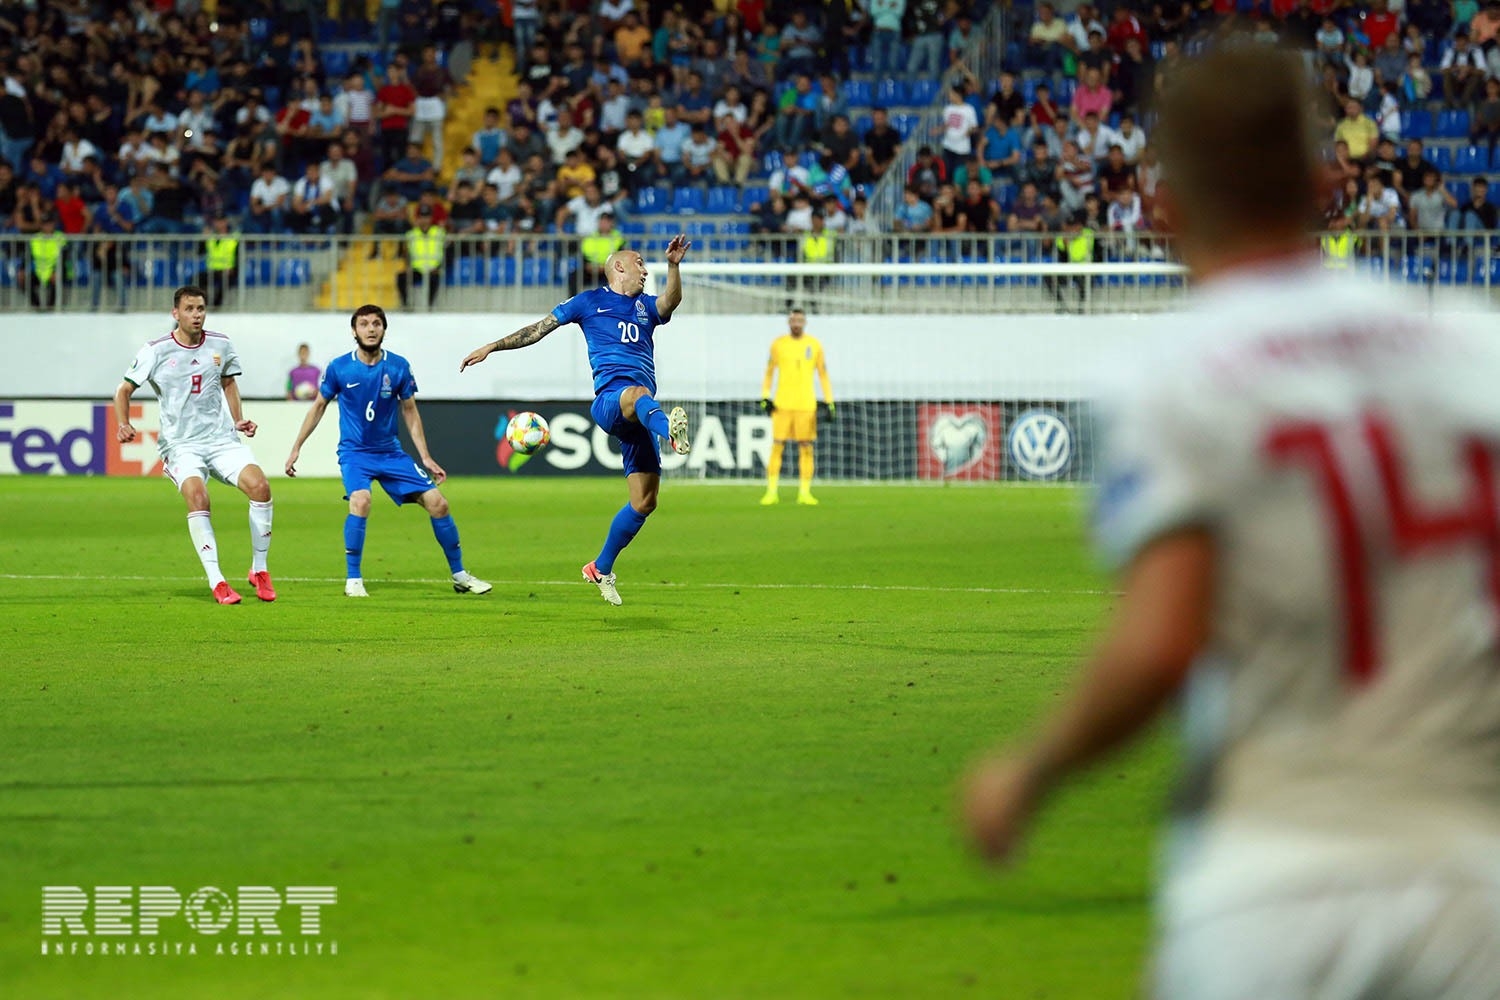 Debüt oyununda Azərbaycan millisinə qol vuran futbolçu: “Unudulmaz bir gün oldu”